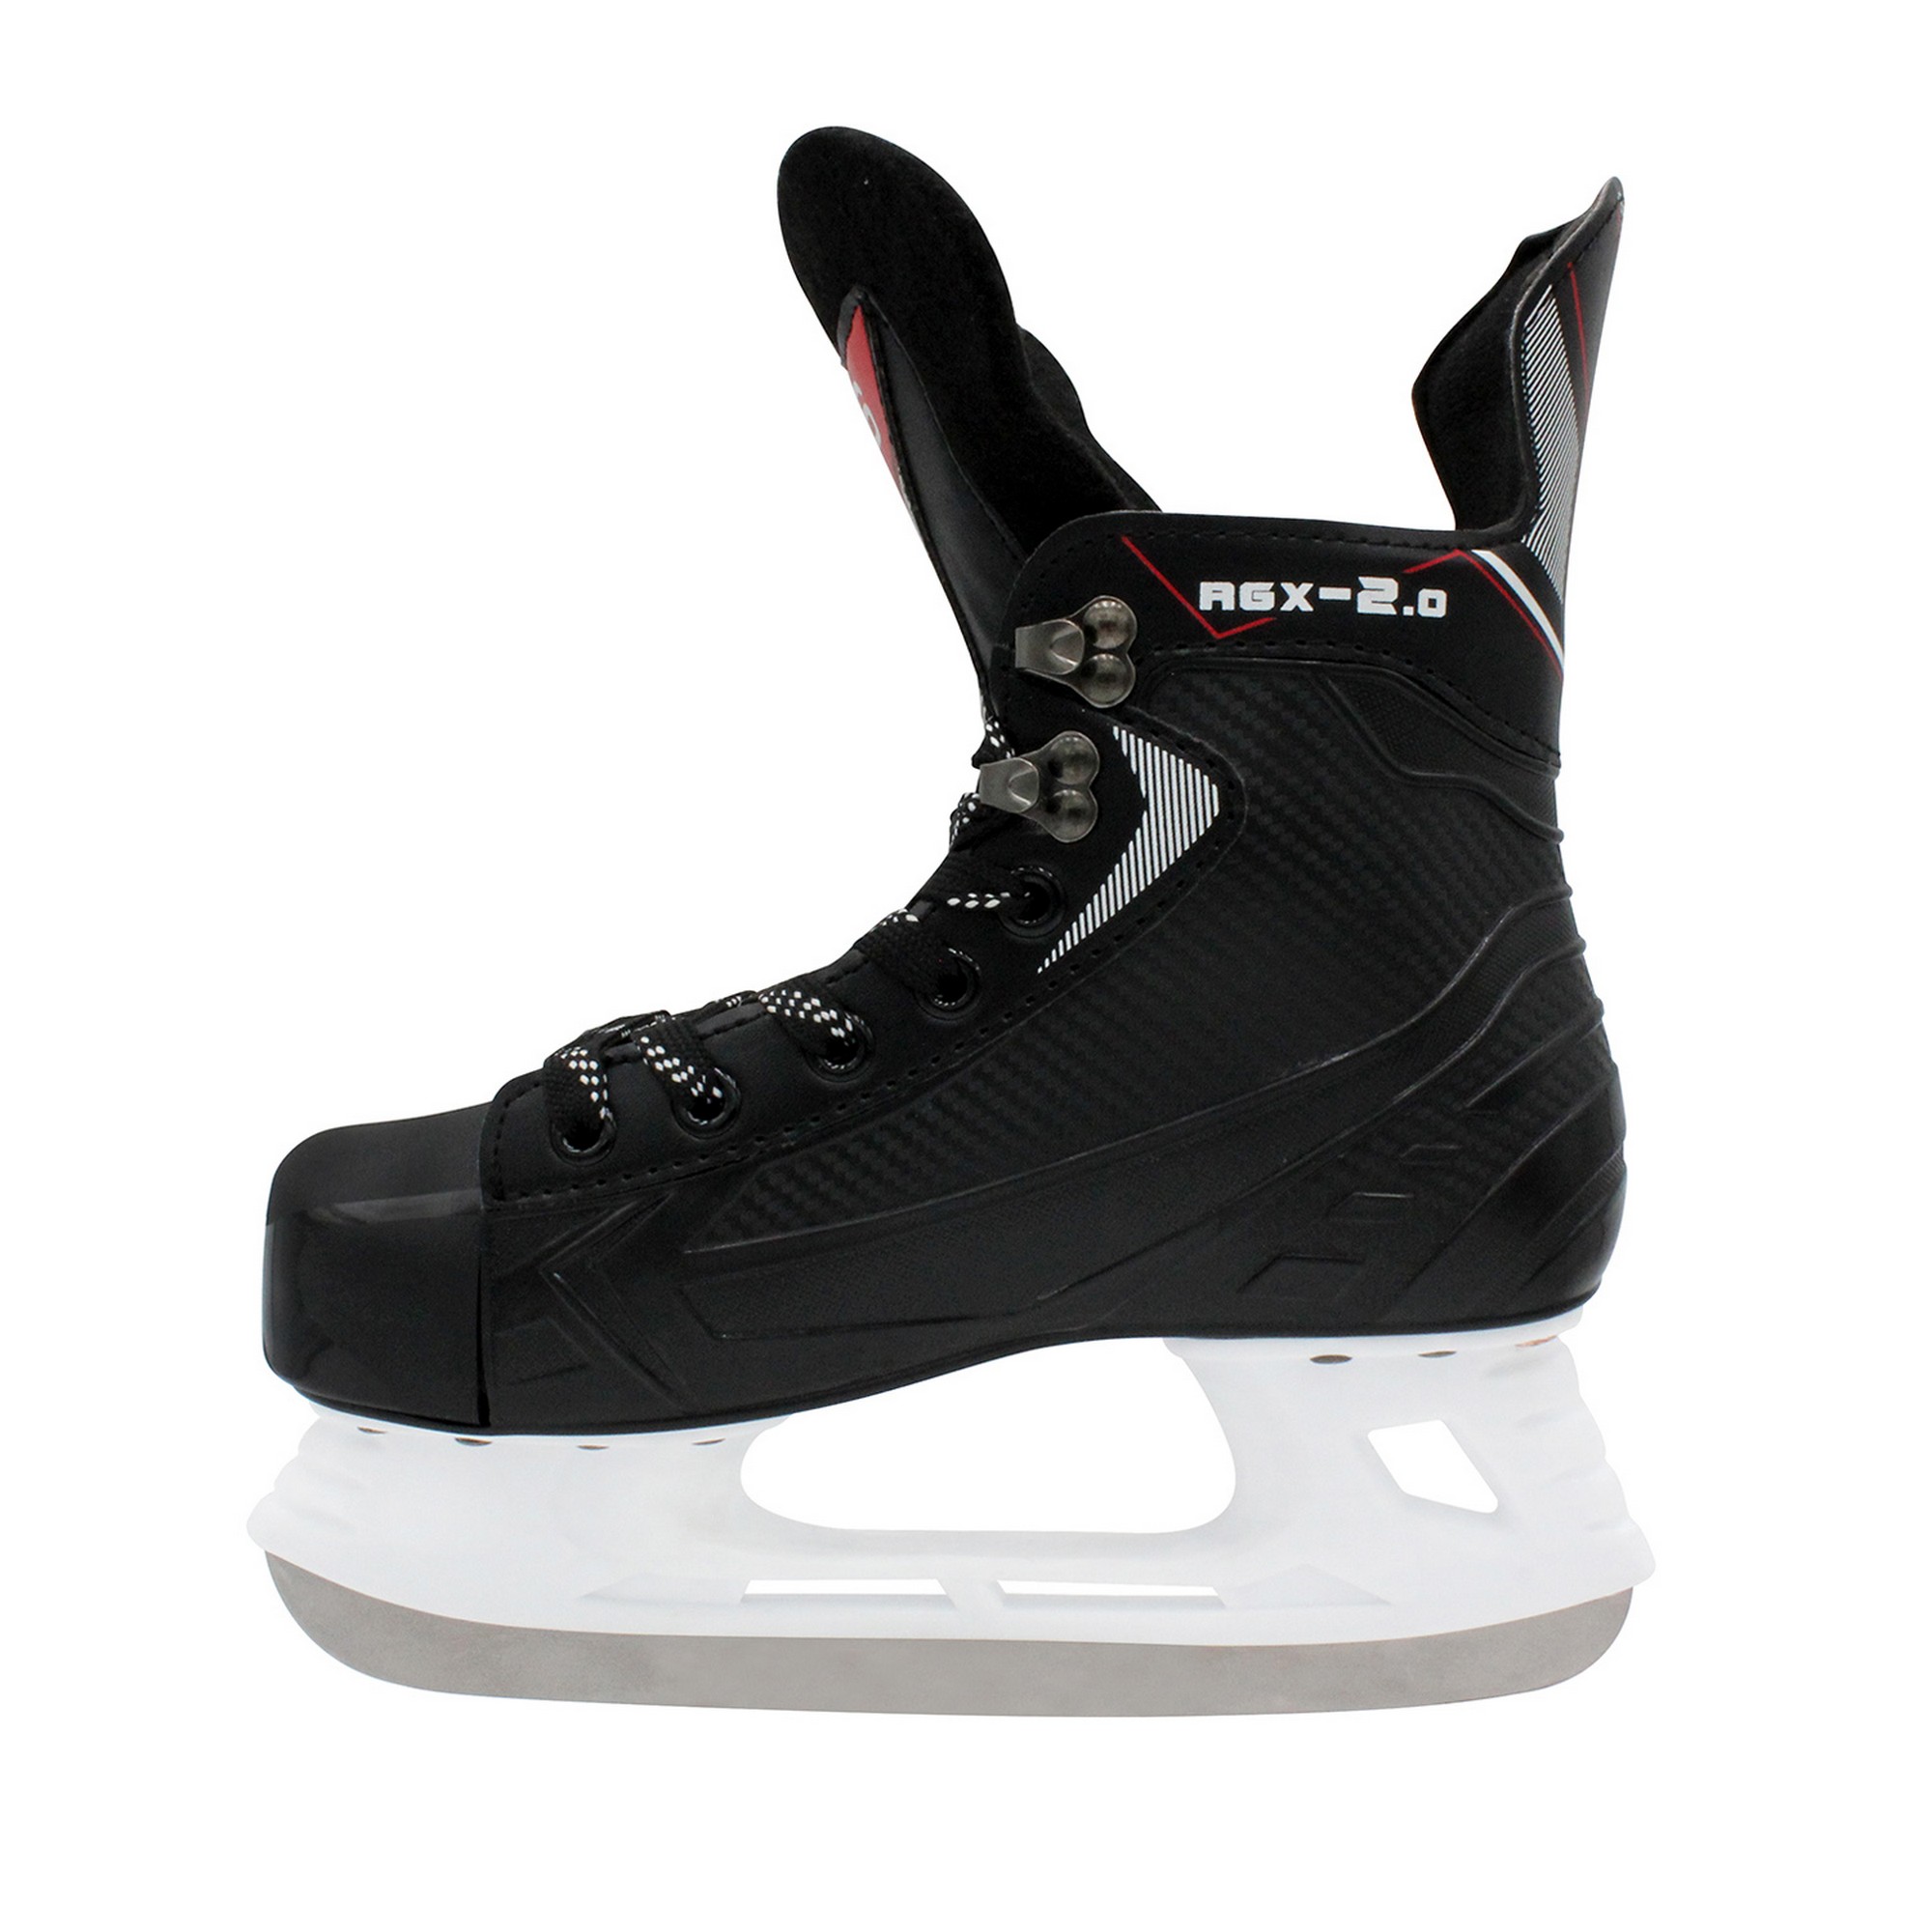 Хоккейные коньки RGX для проката RGX-2.0 ICE-Track 2000_2000